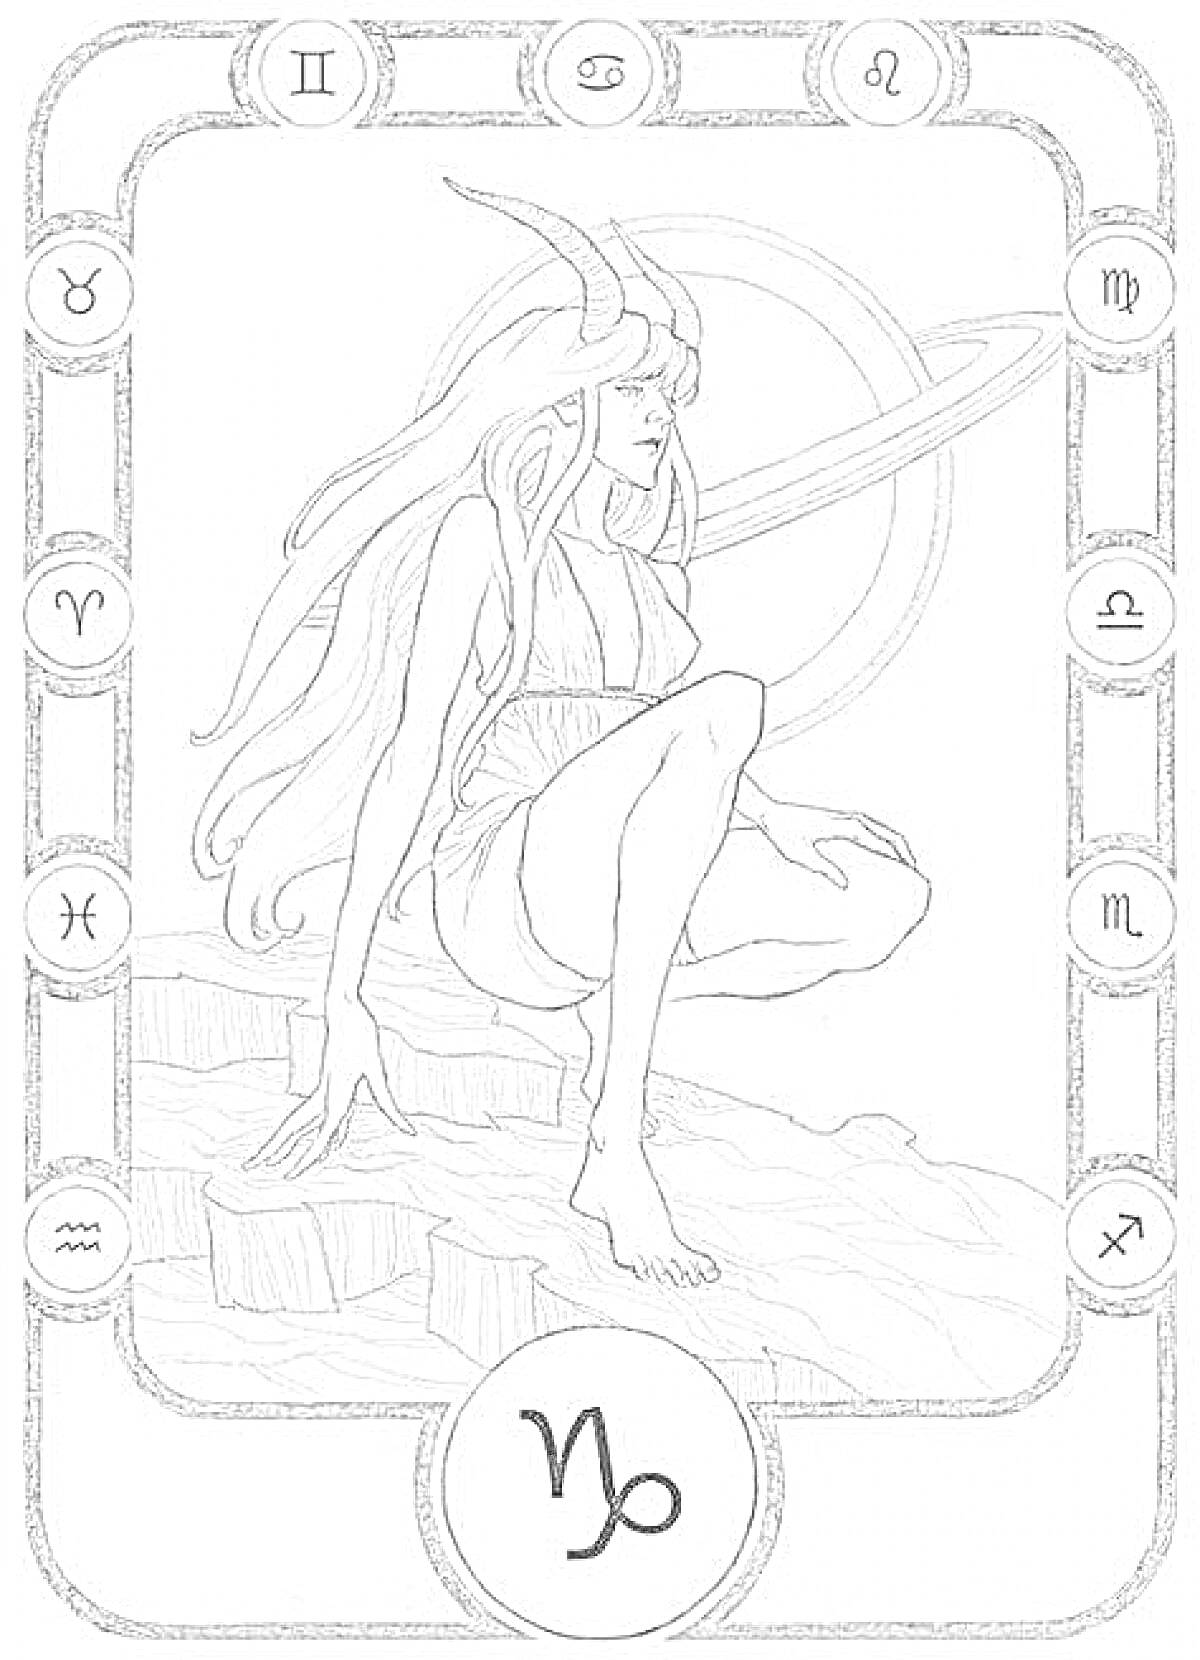 Раскраска Фигура женщины с рогами, сидящей на скале, окруженная символами зодиака, с символом Козерога внизу